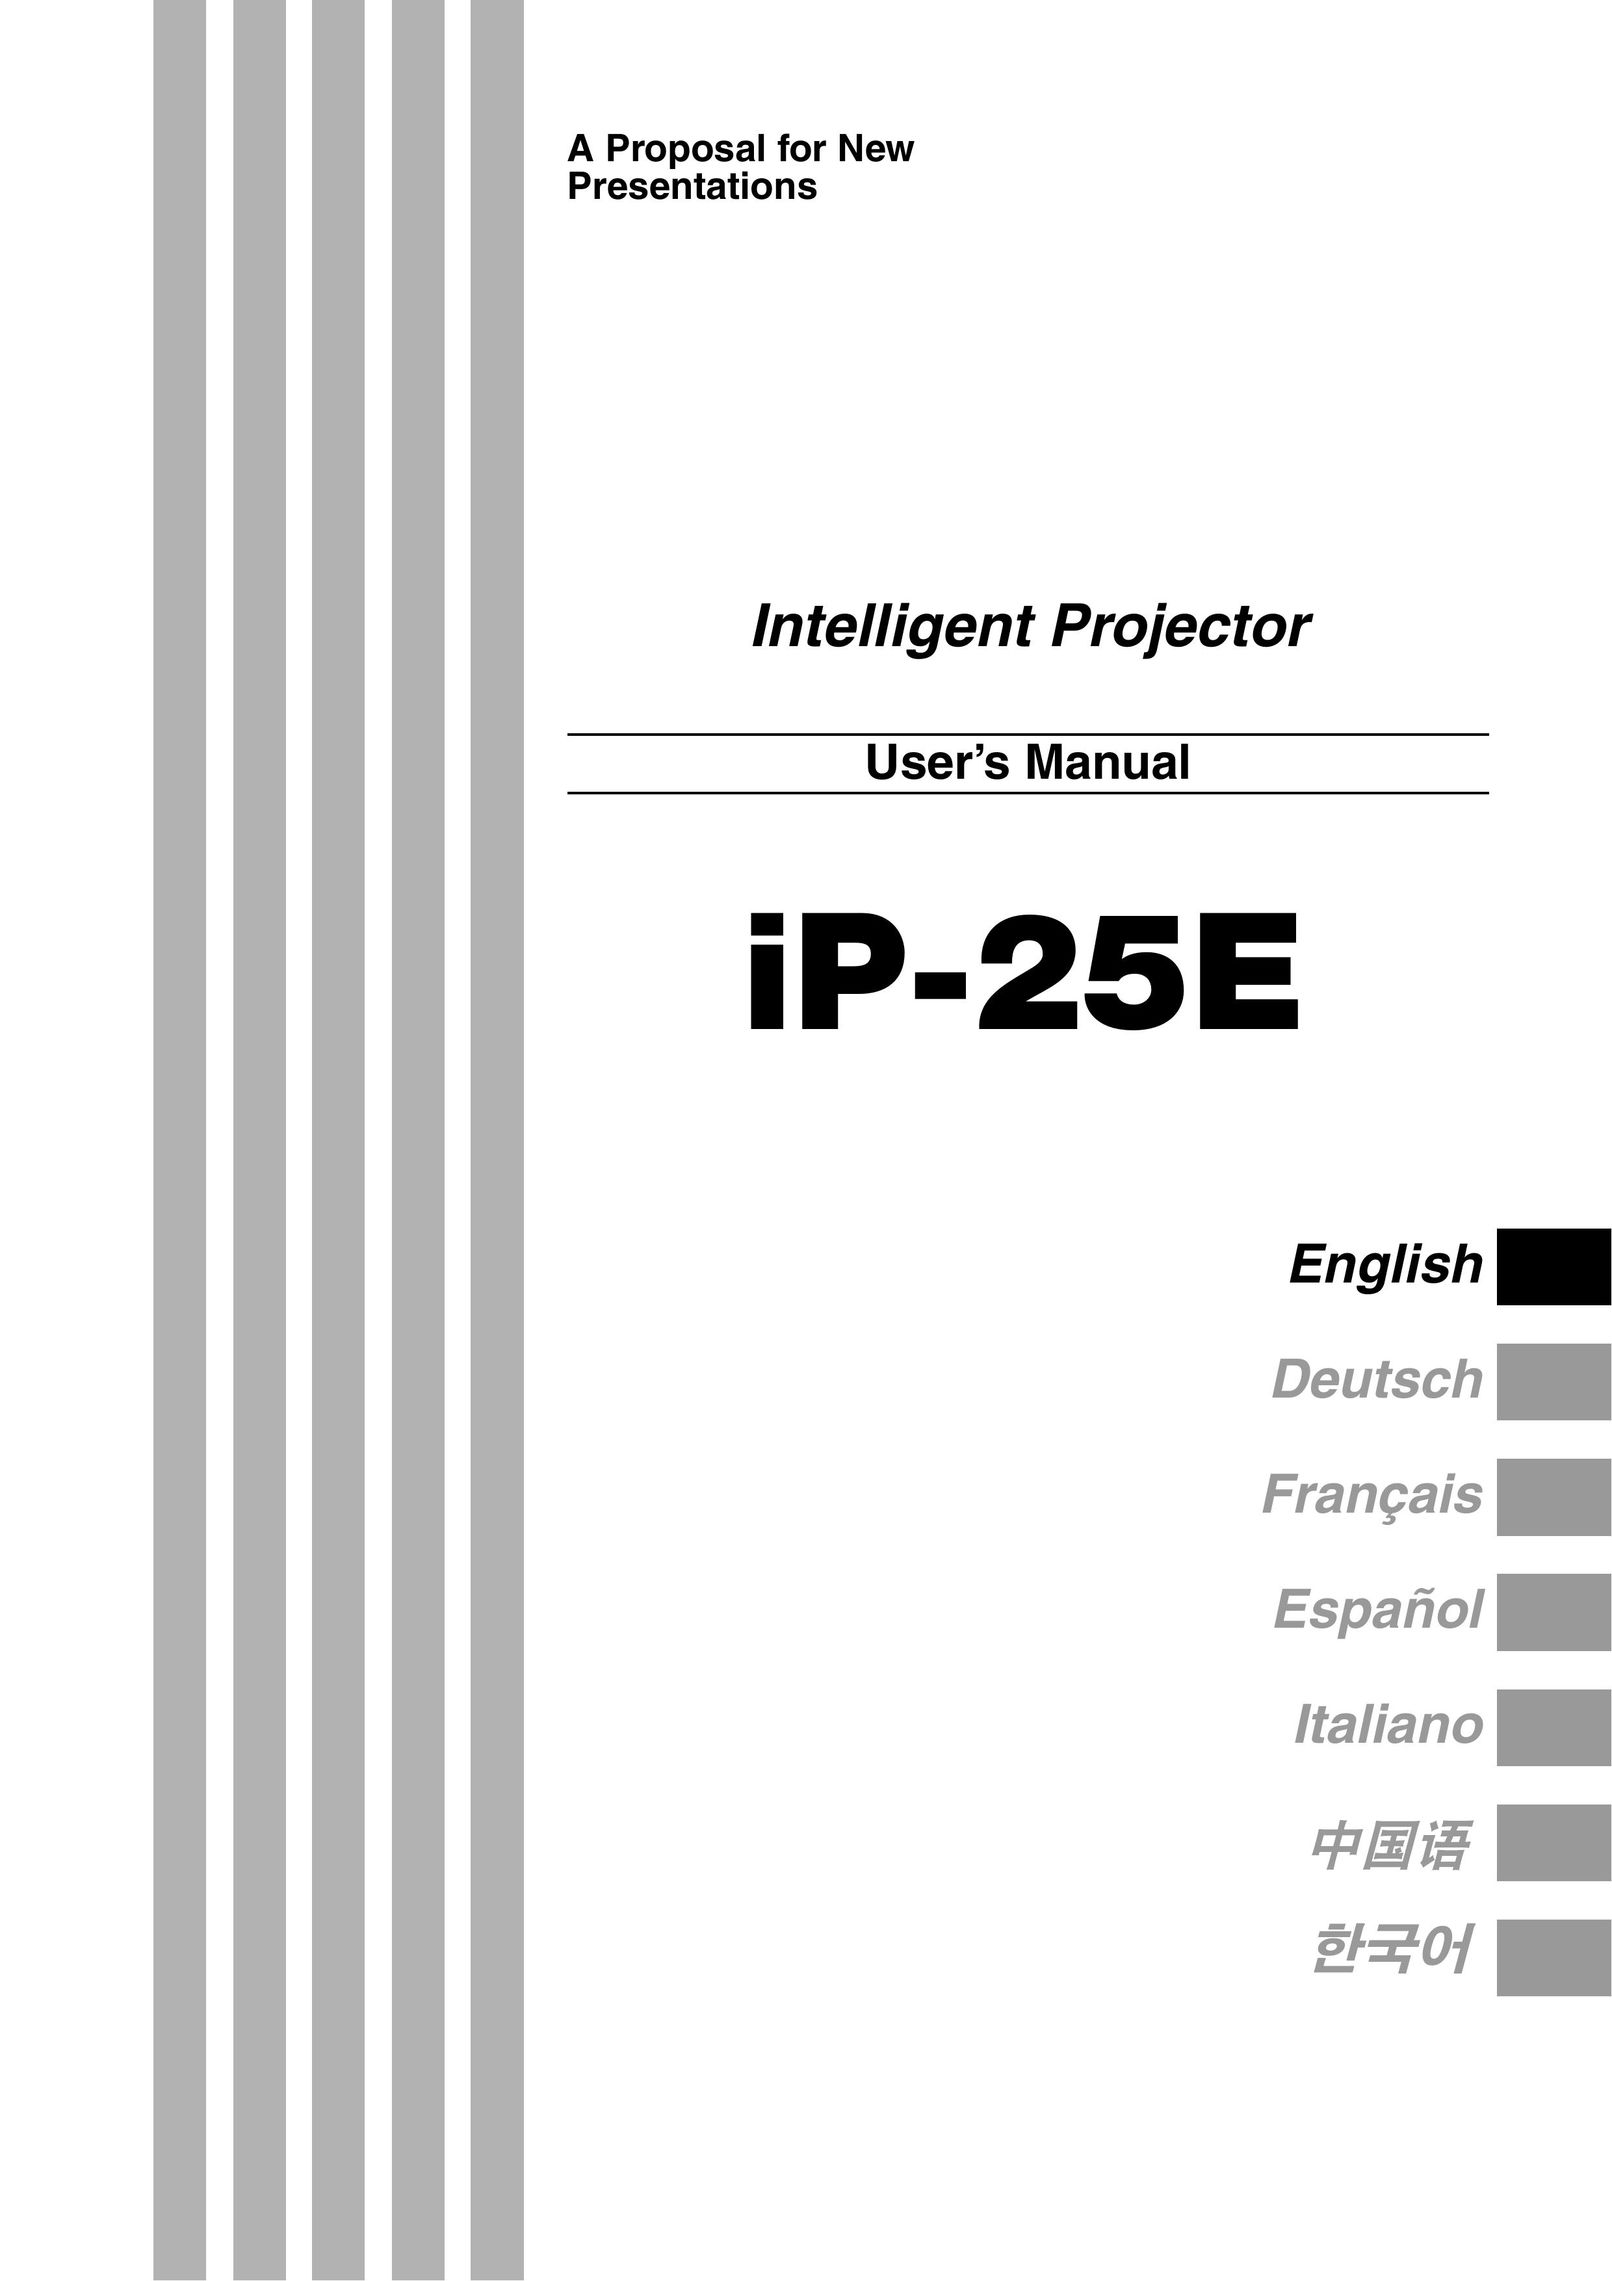 Compaq iP-25E Projector User Manual